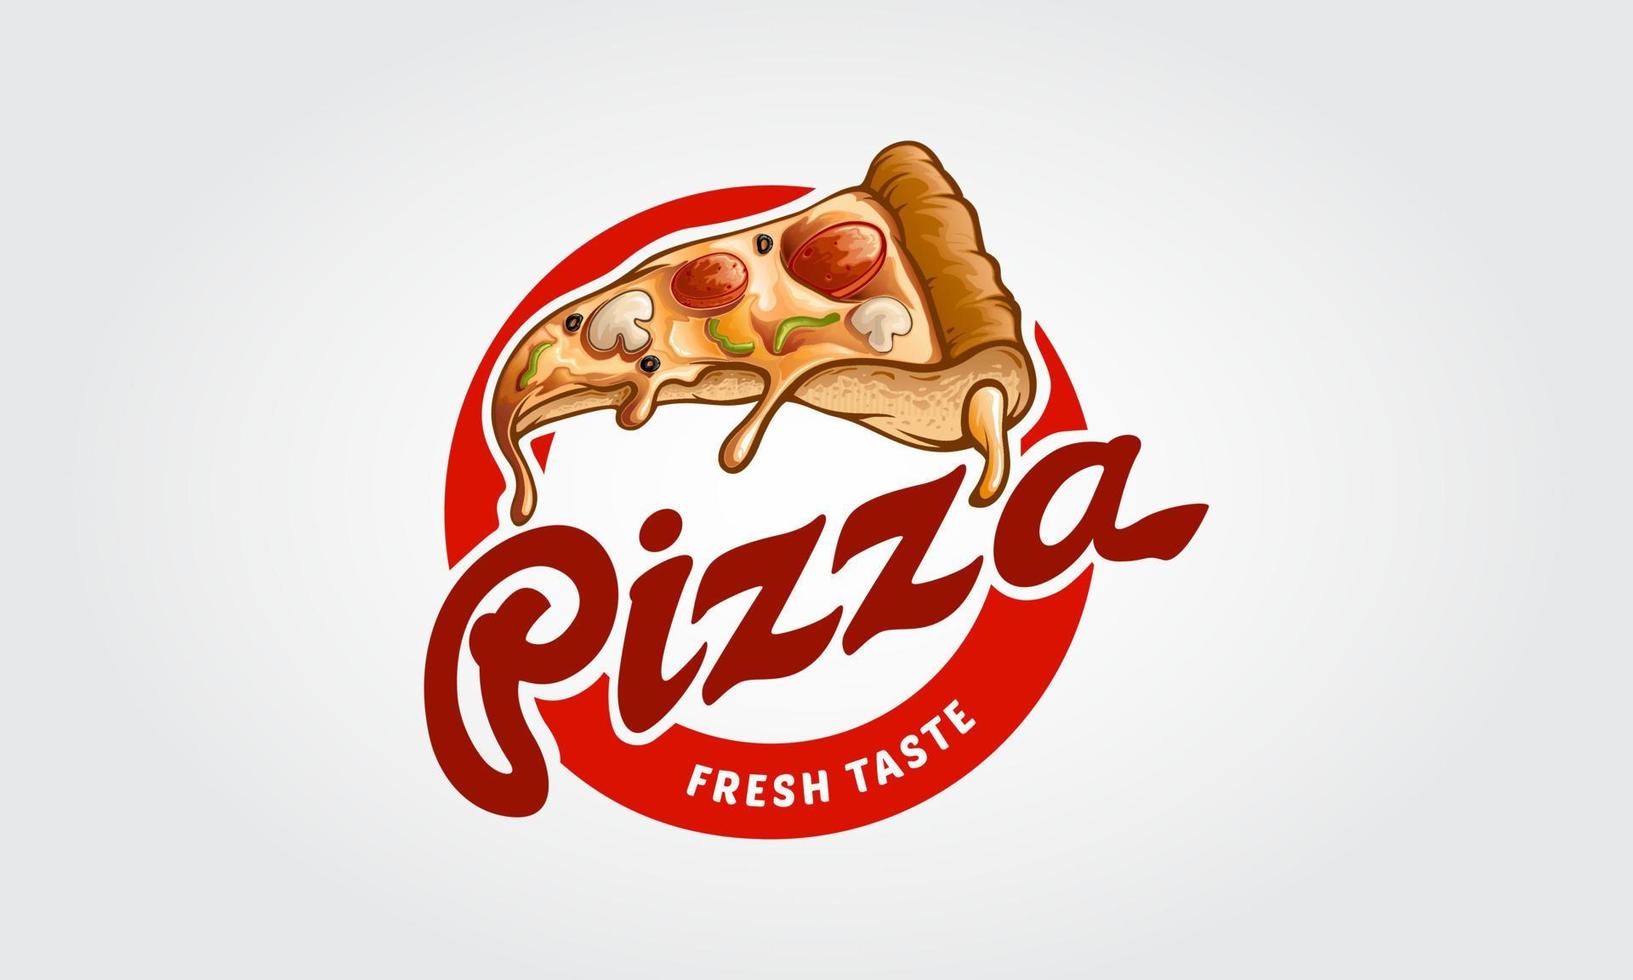 cartone animato logo vettoriale pizza. questo logo è altamente adatto a qualsiasi ristorante legato alla pizza, fast food, consegna a domicilio, bistrot, catering e attività legate al cibo italiano.